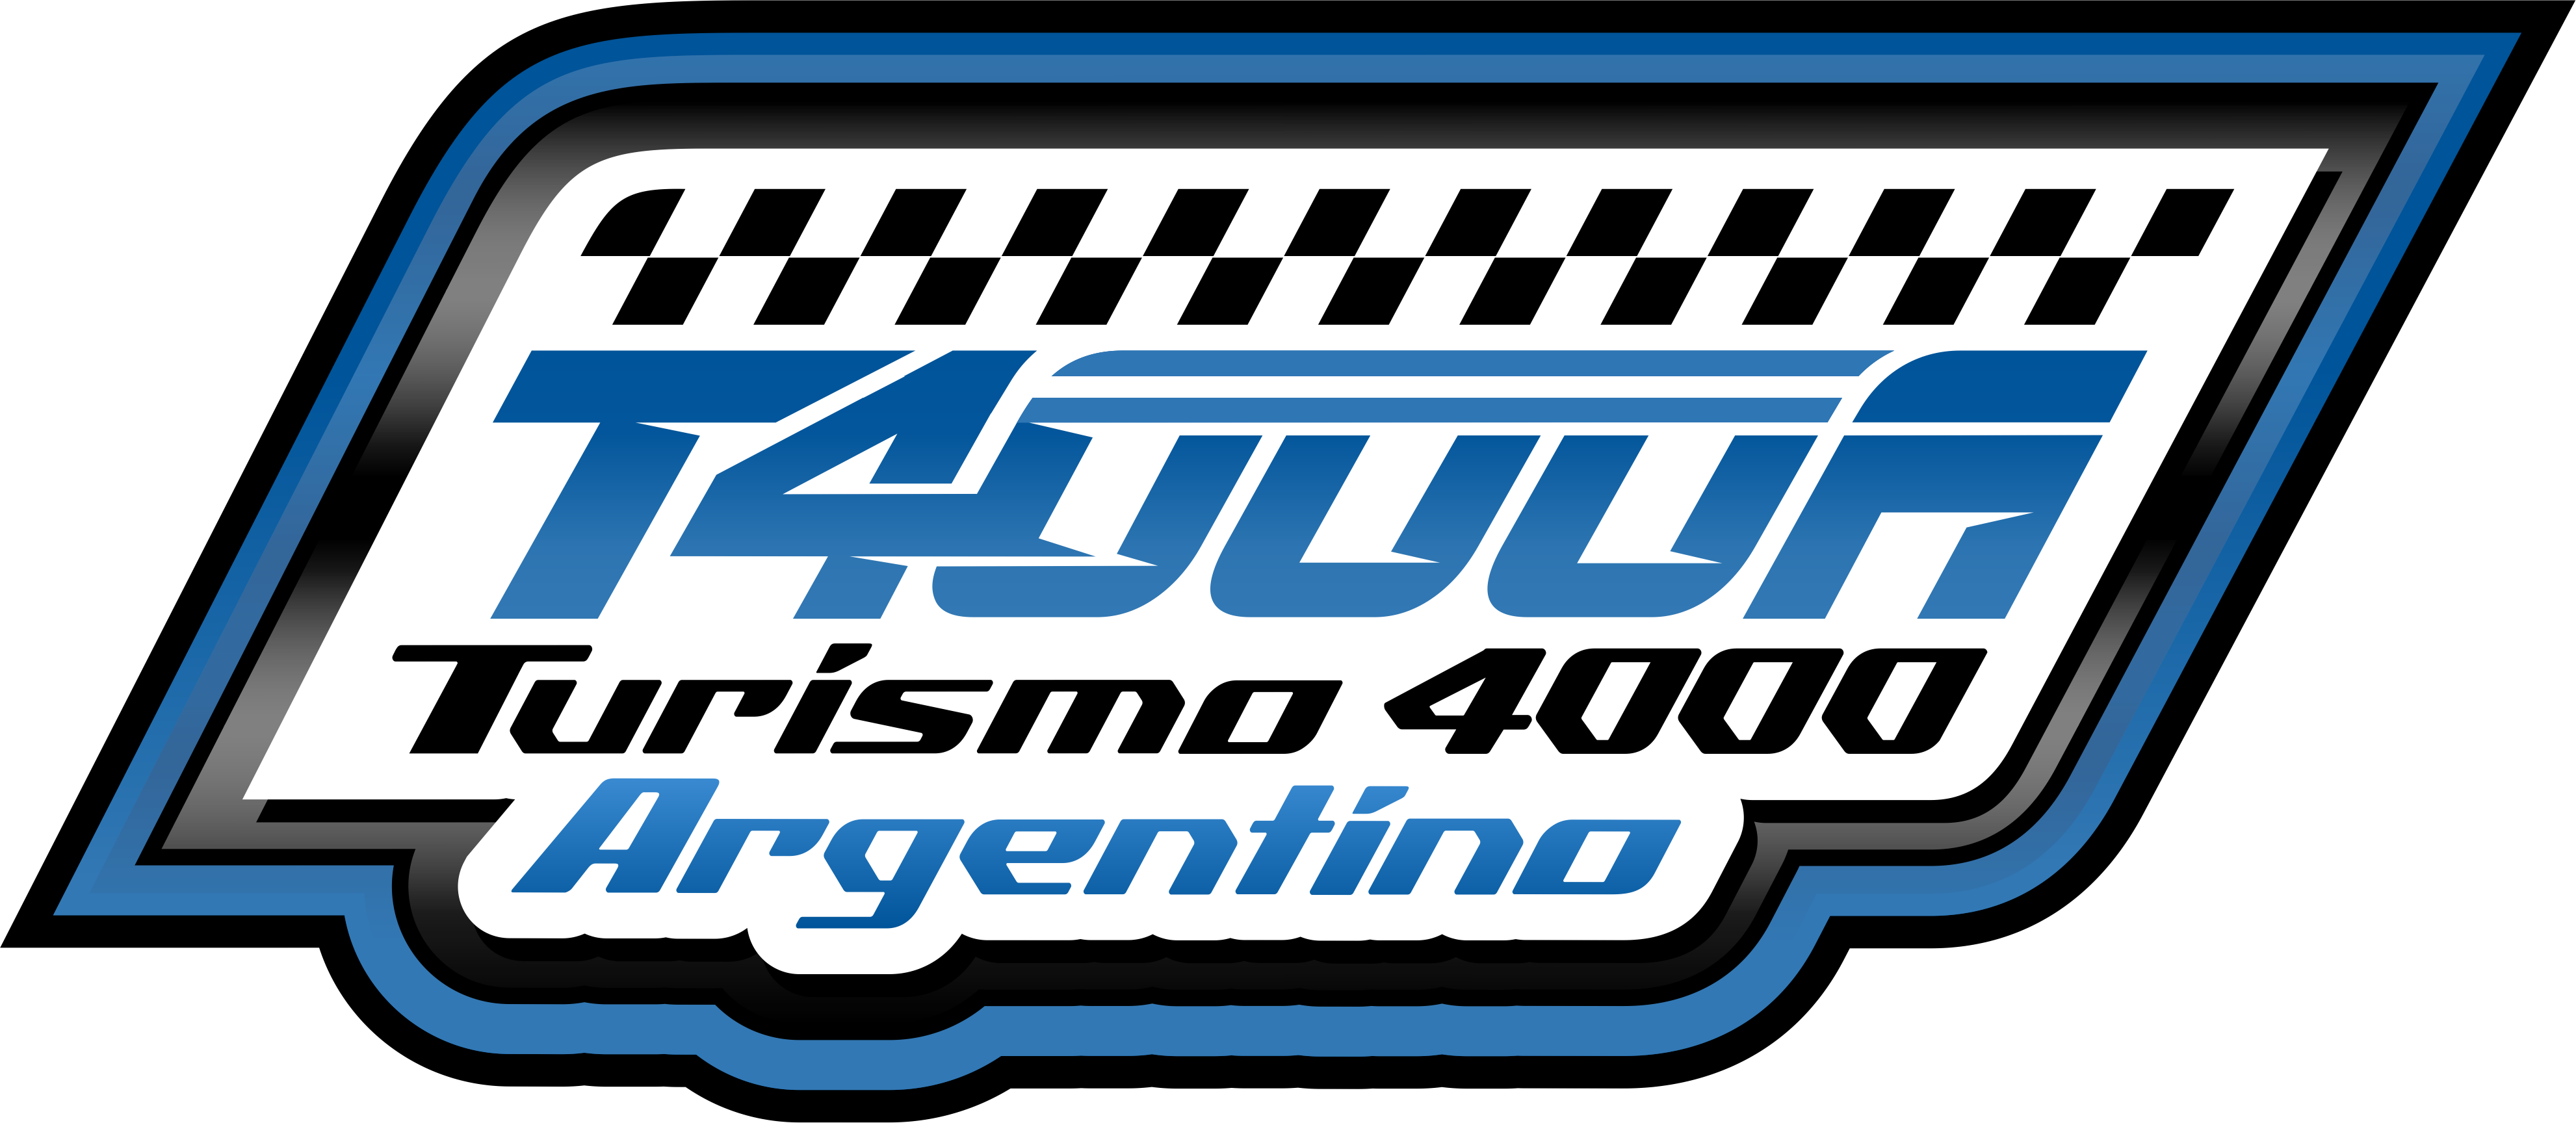 Turismo 4000 Argentino